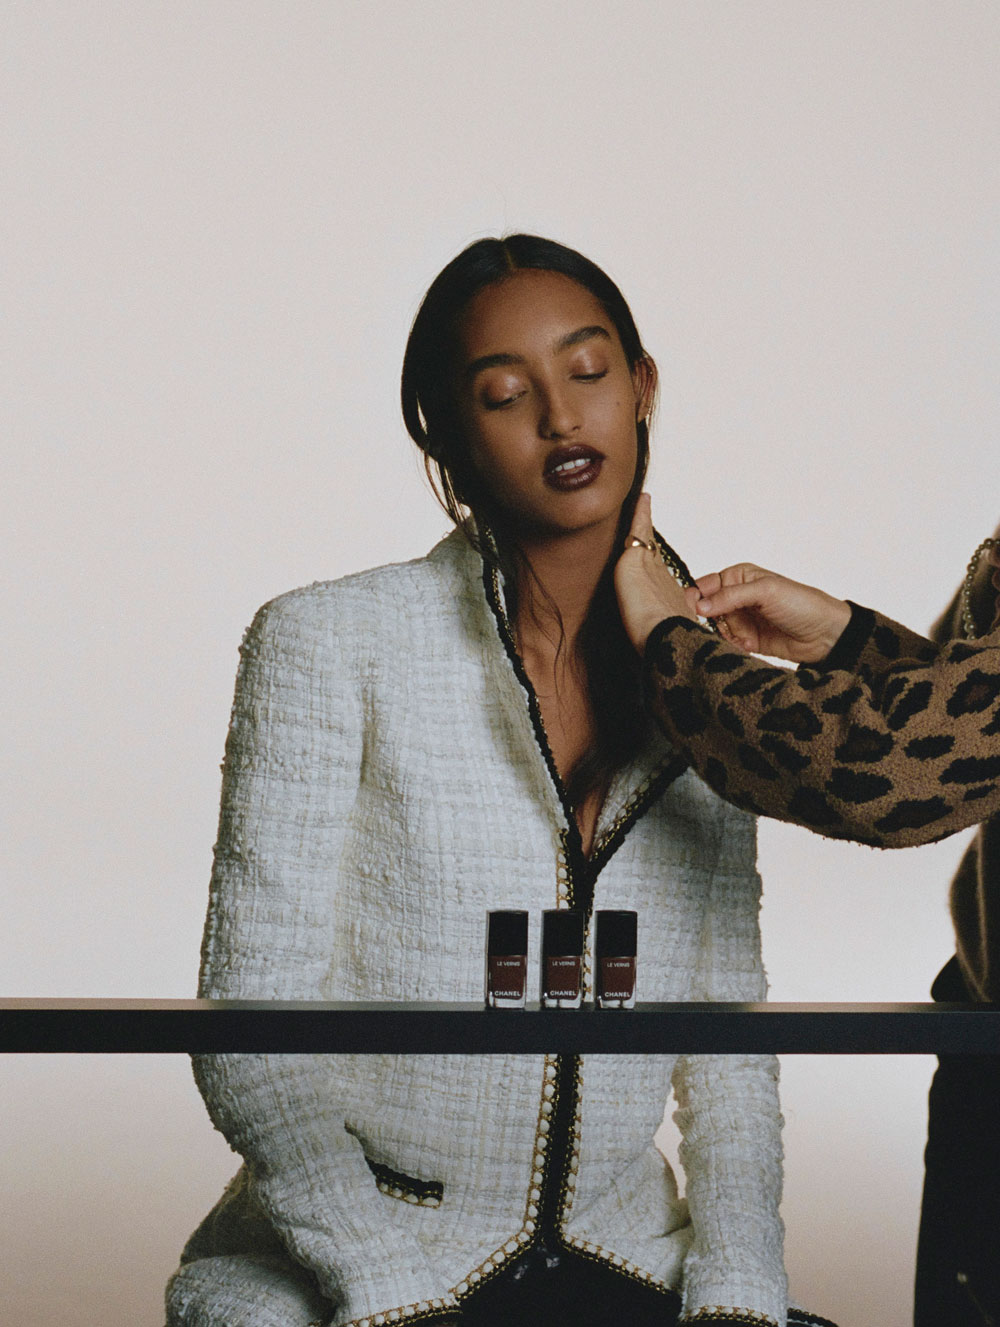 Zur Einstimmung auf den Herbst gibt es auf sonrisa eine Vorschau auf die neue Makeup-Kollektion von Chanel, welche die Glückshormone tanzen lässt als ob der Sommer in Verlängerung ginge...